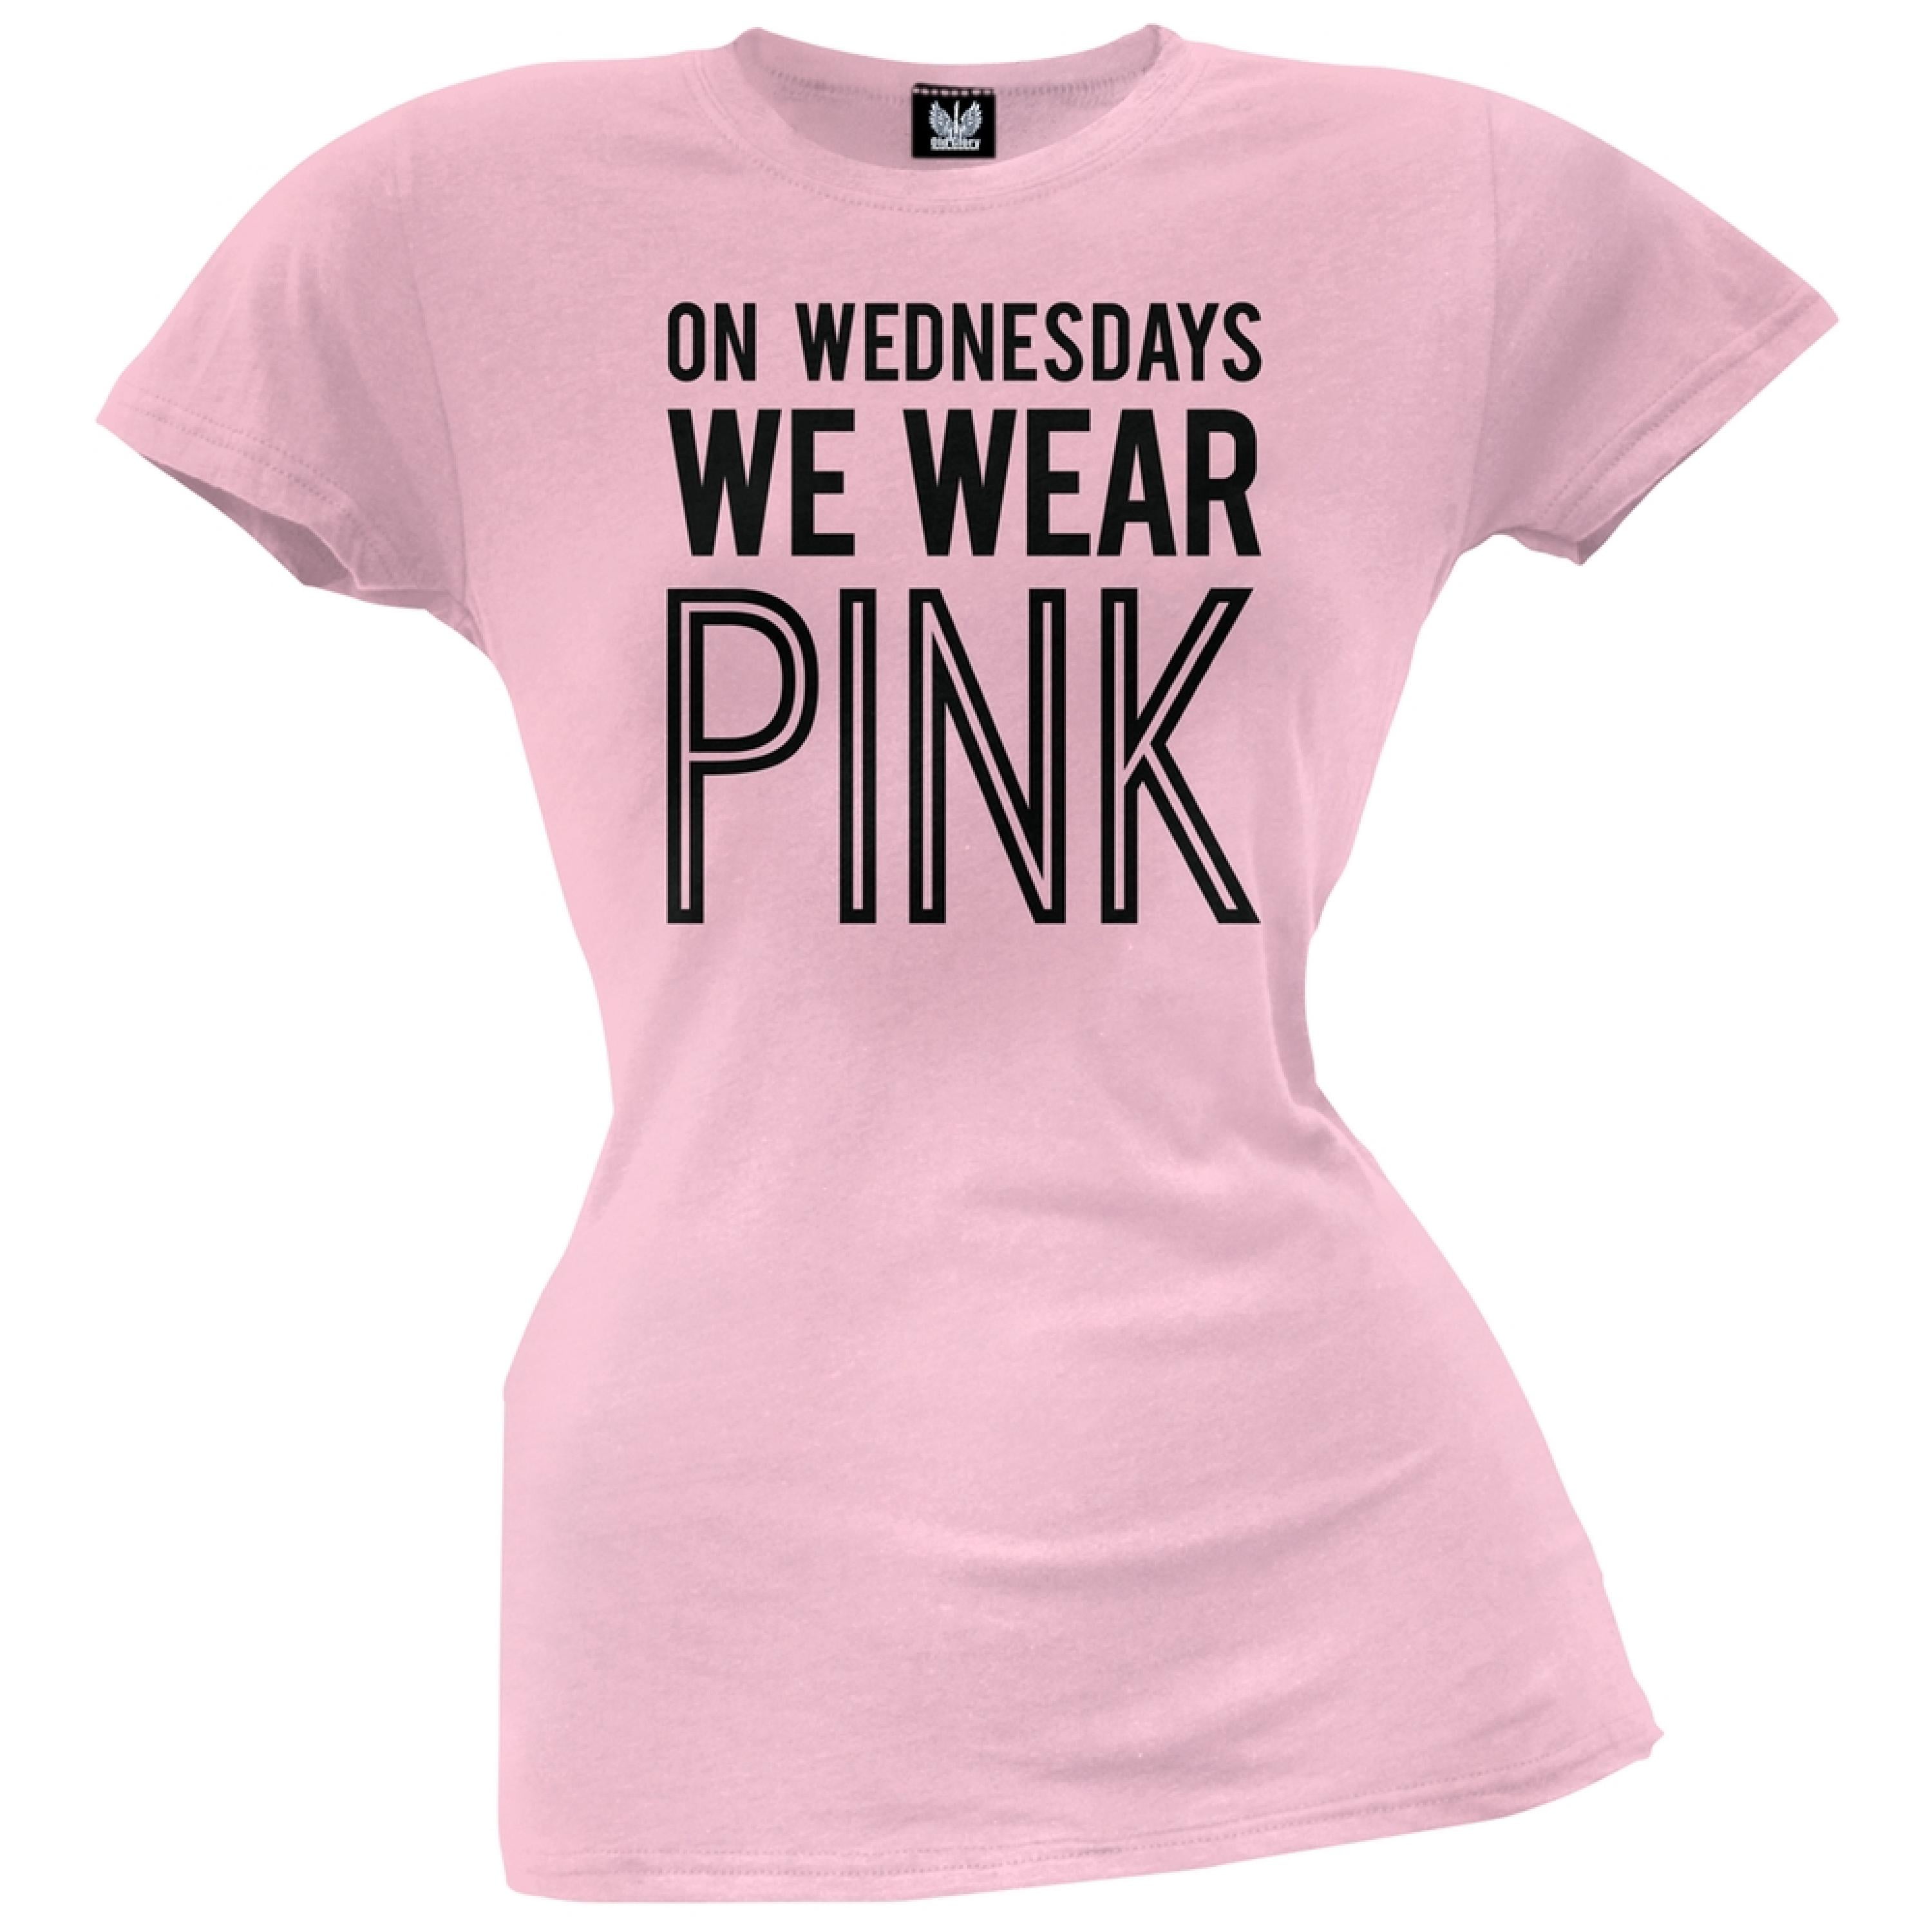 Wear перевести. We Wear Pink футболка. On Wednesday we Wear Pink. Одежда Wednesday. Футболка Wednesday женская.